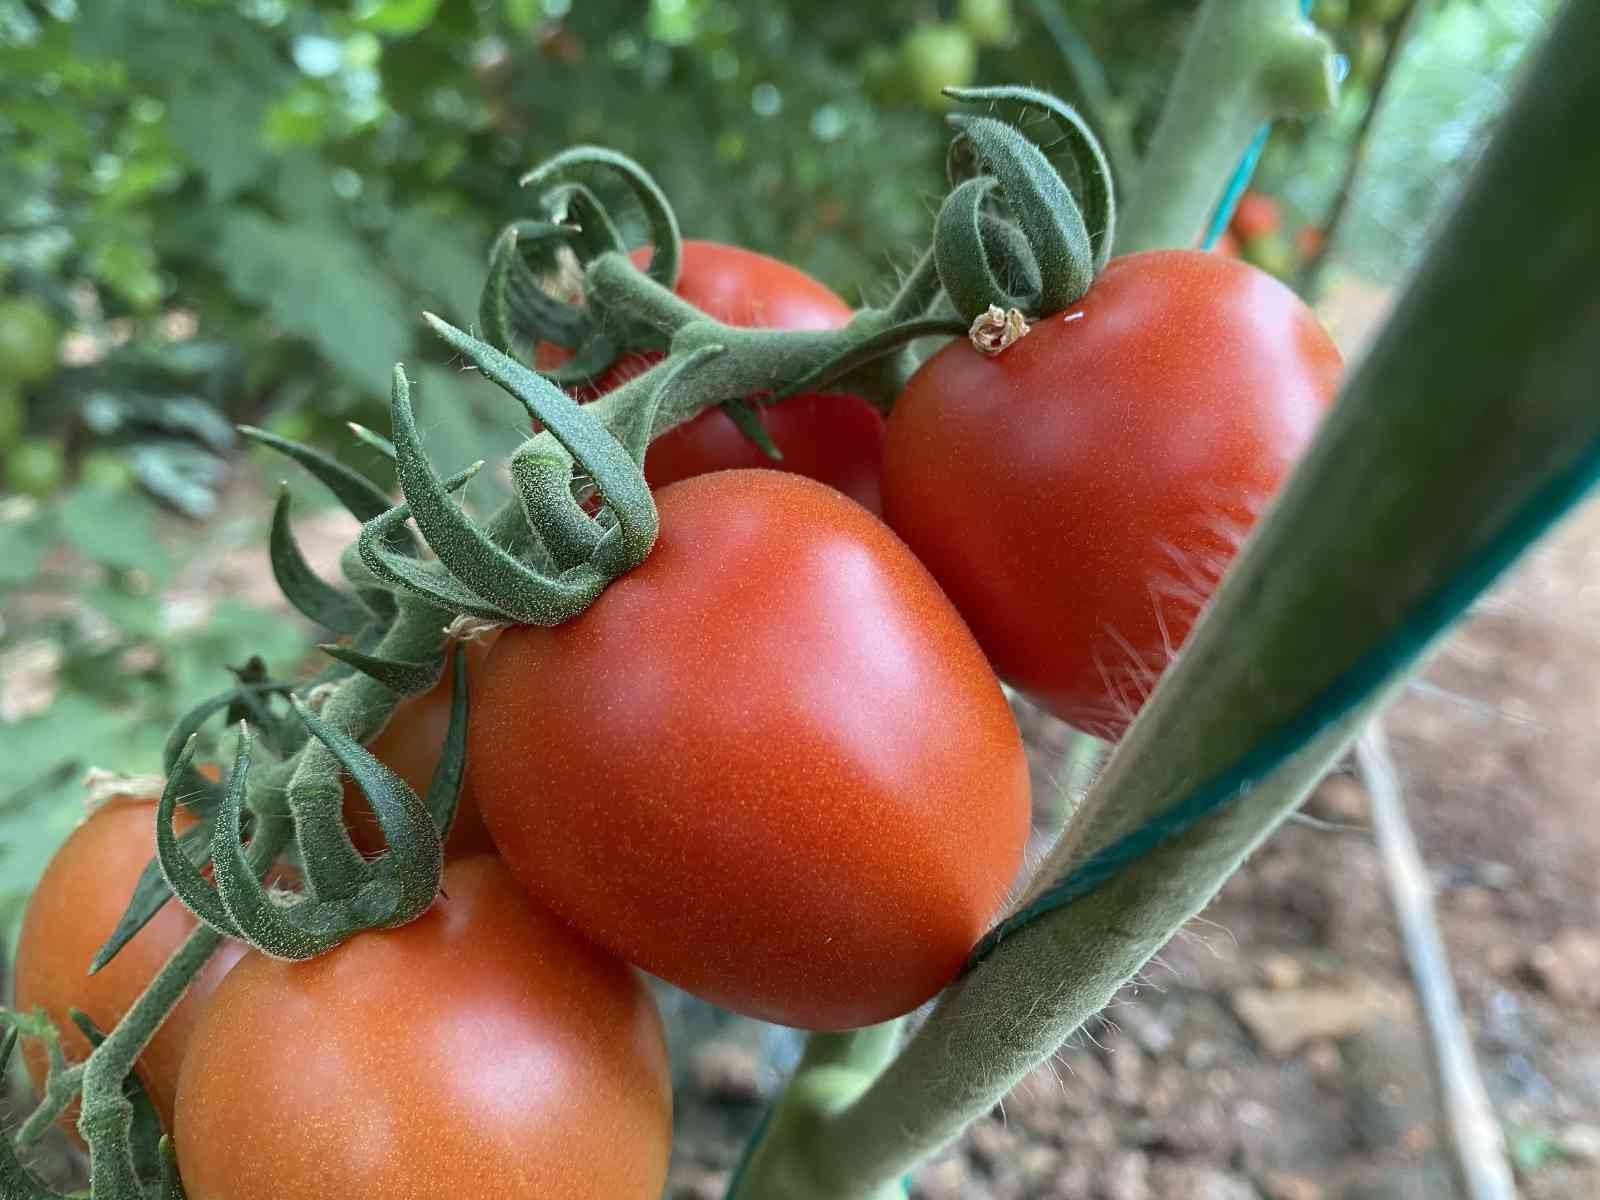 Üreticiden 13 TL’ye çıkan kokteyl domates marketlerde 23 TL’ye satılıyor